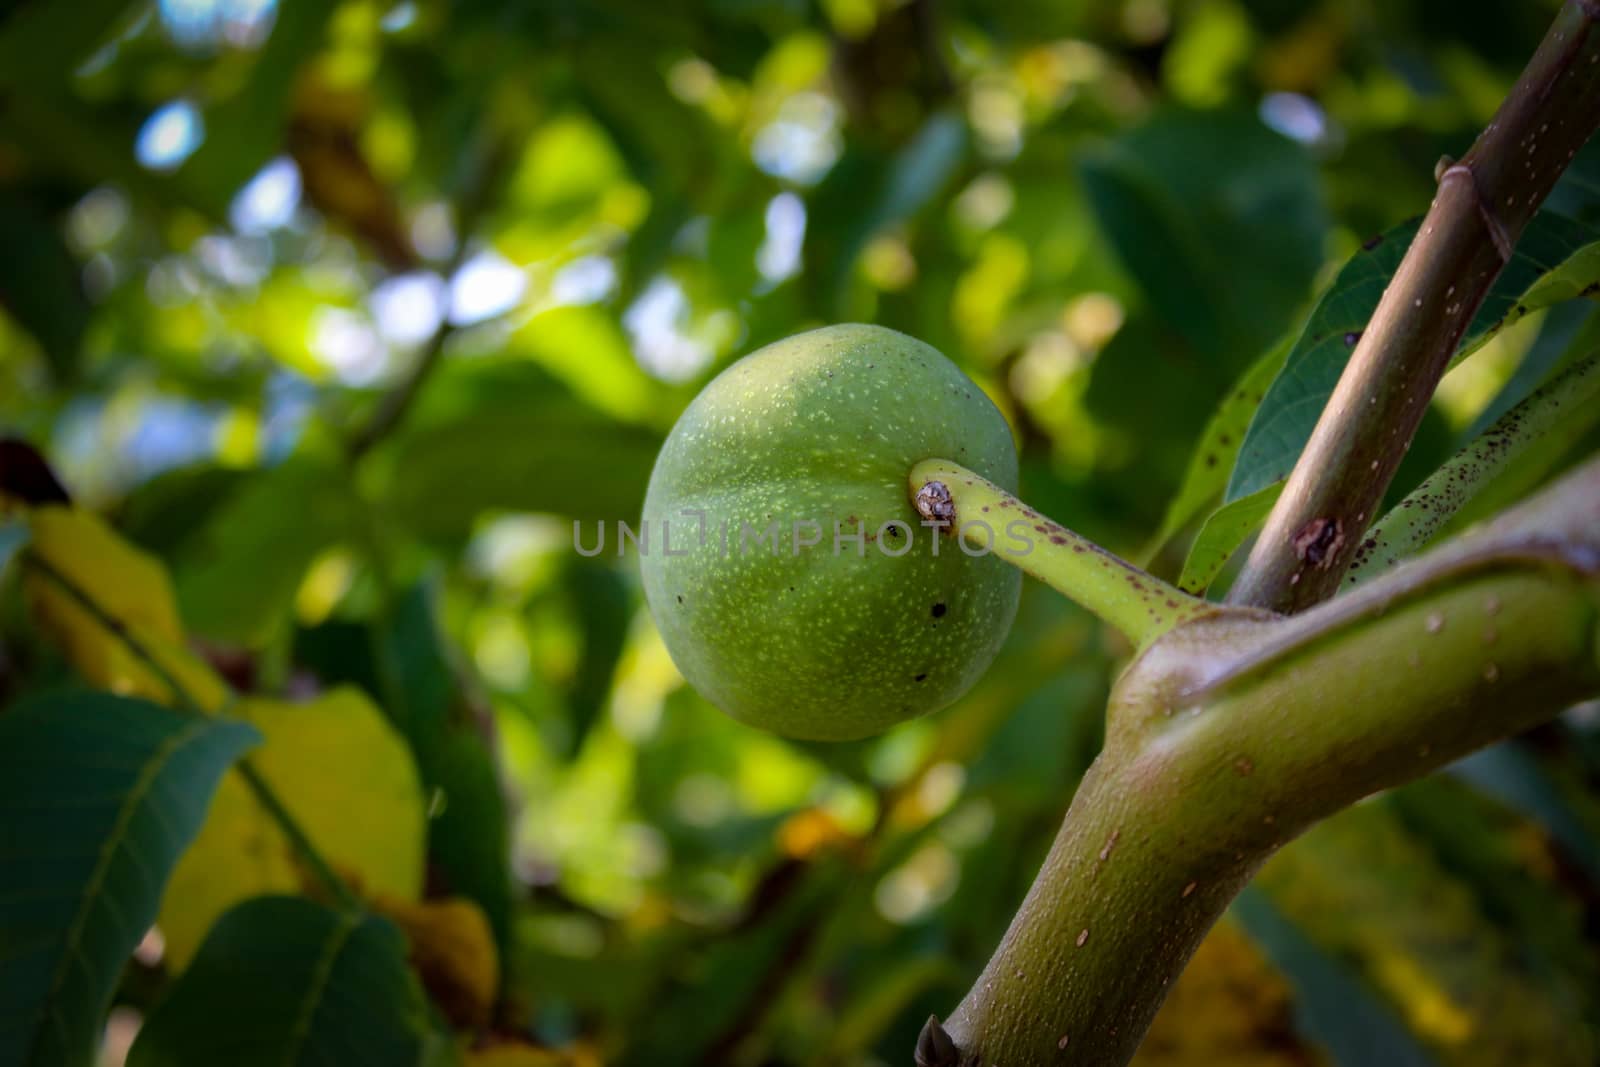 One green unripe walnut on a branch. Zavidovici, Bosnia and Herzegovina.